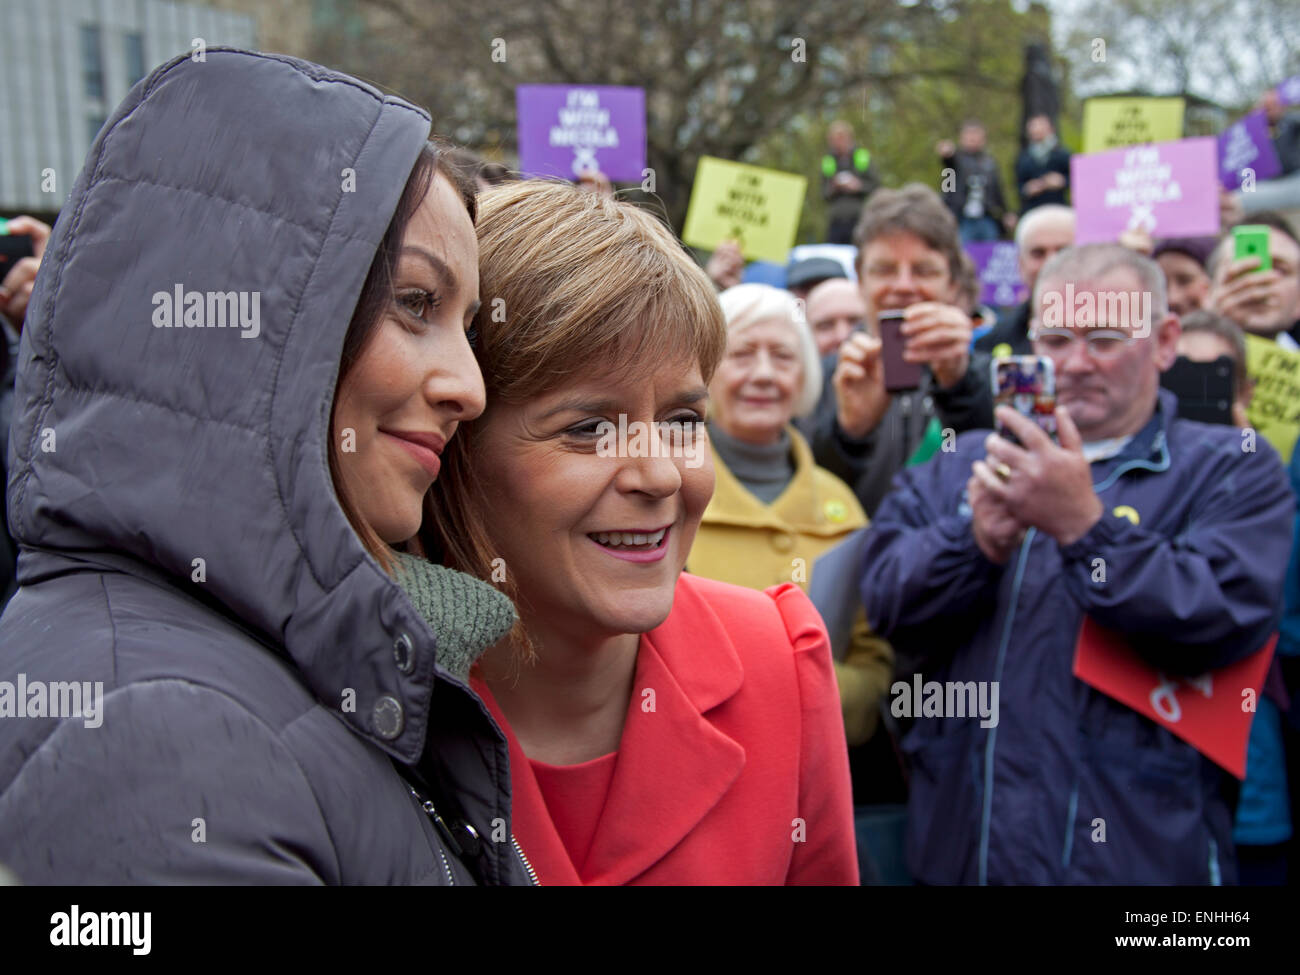 Chef de parti affronte les dreich météo écossais avec des partisans d'organiser un événement à l'étal de La Butte Paris à s'adresser aux électeurs au sujet de l'alternative à l'austérité du SNP le jour avant l'élection générale. Banque D'Images